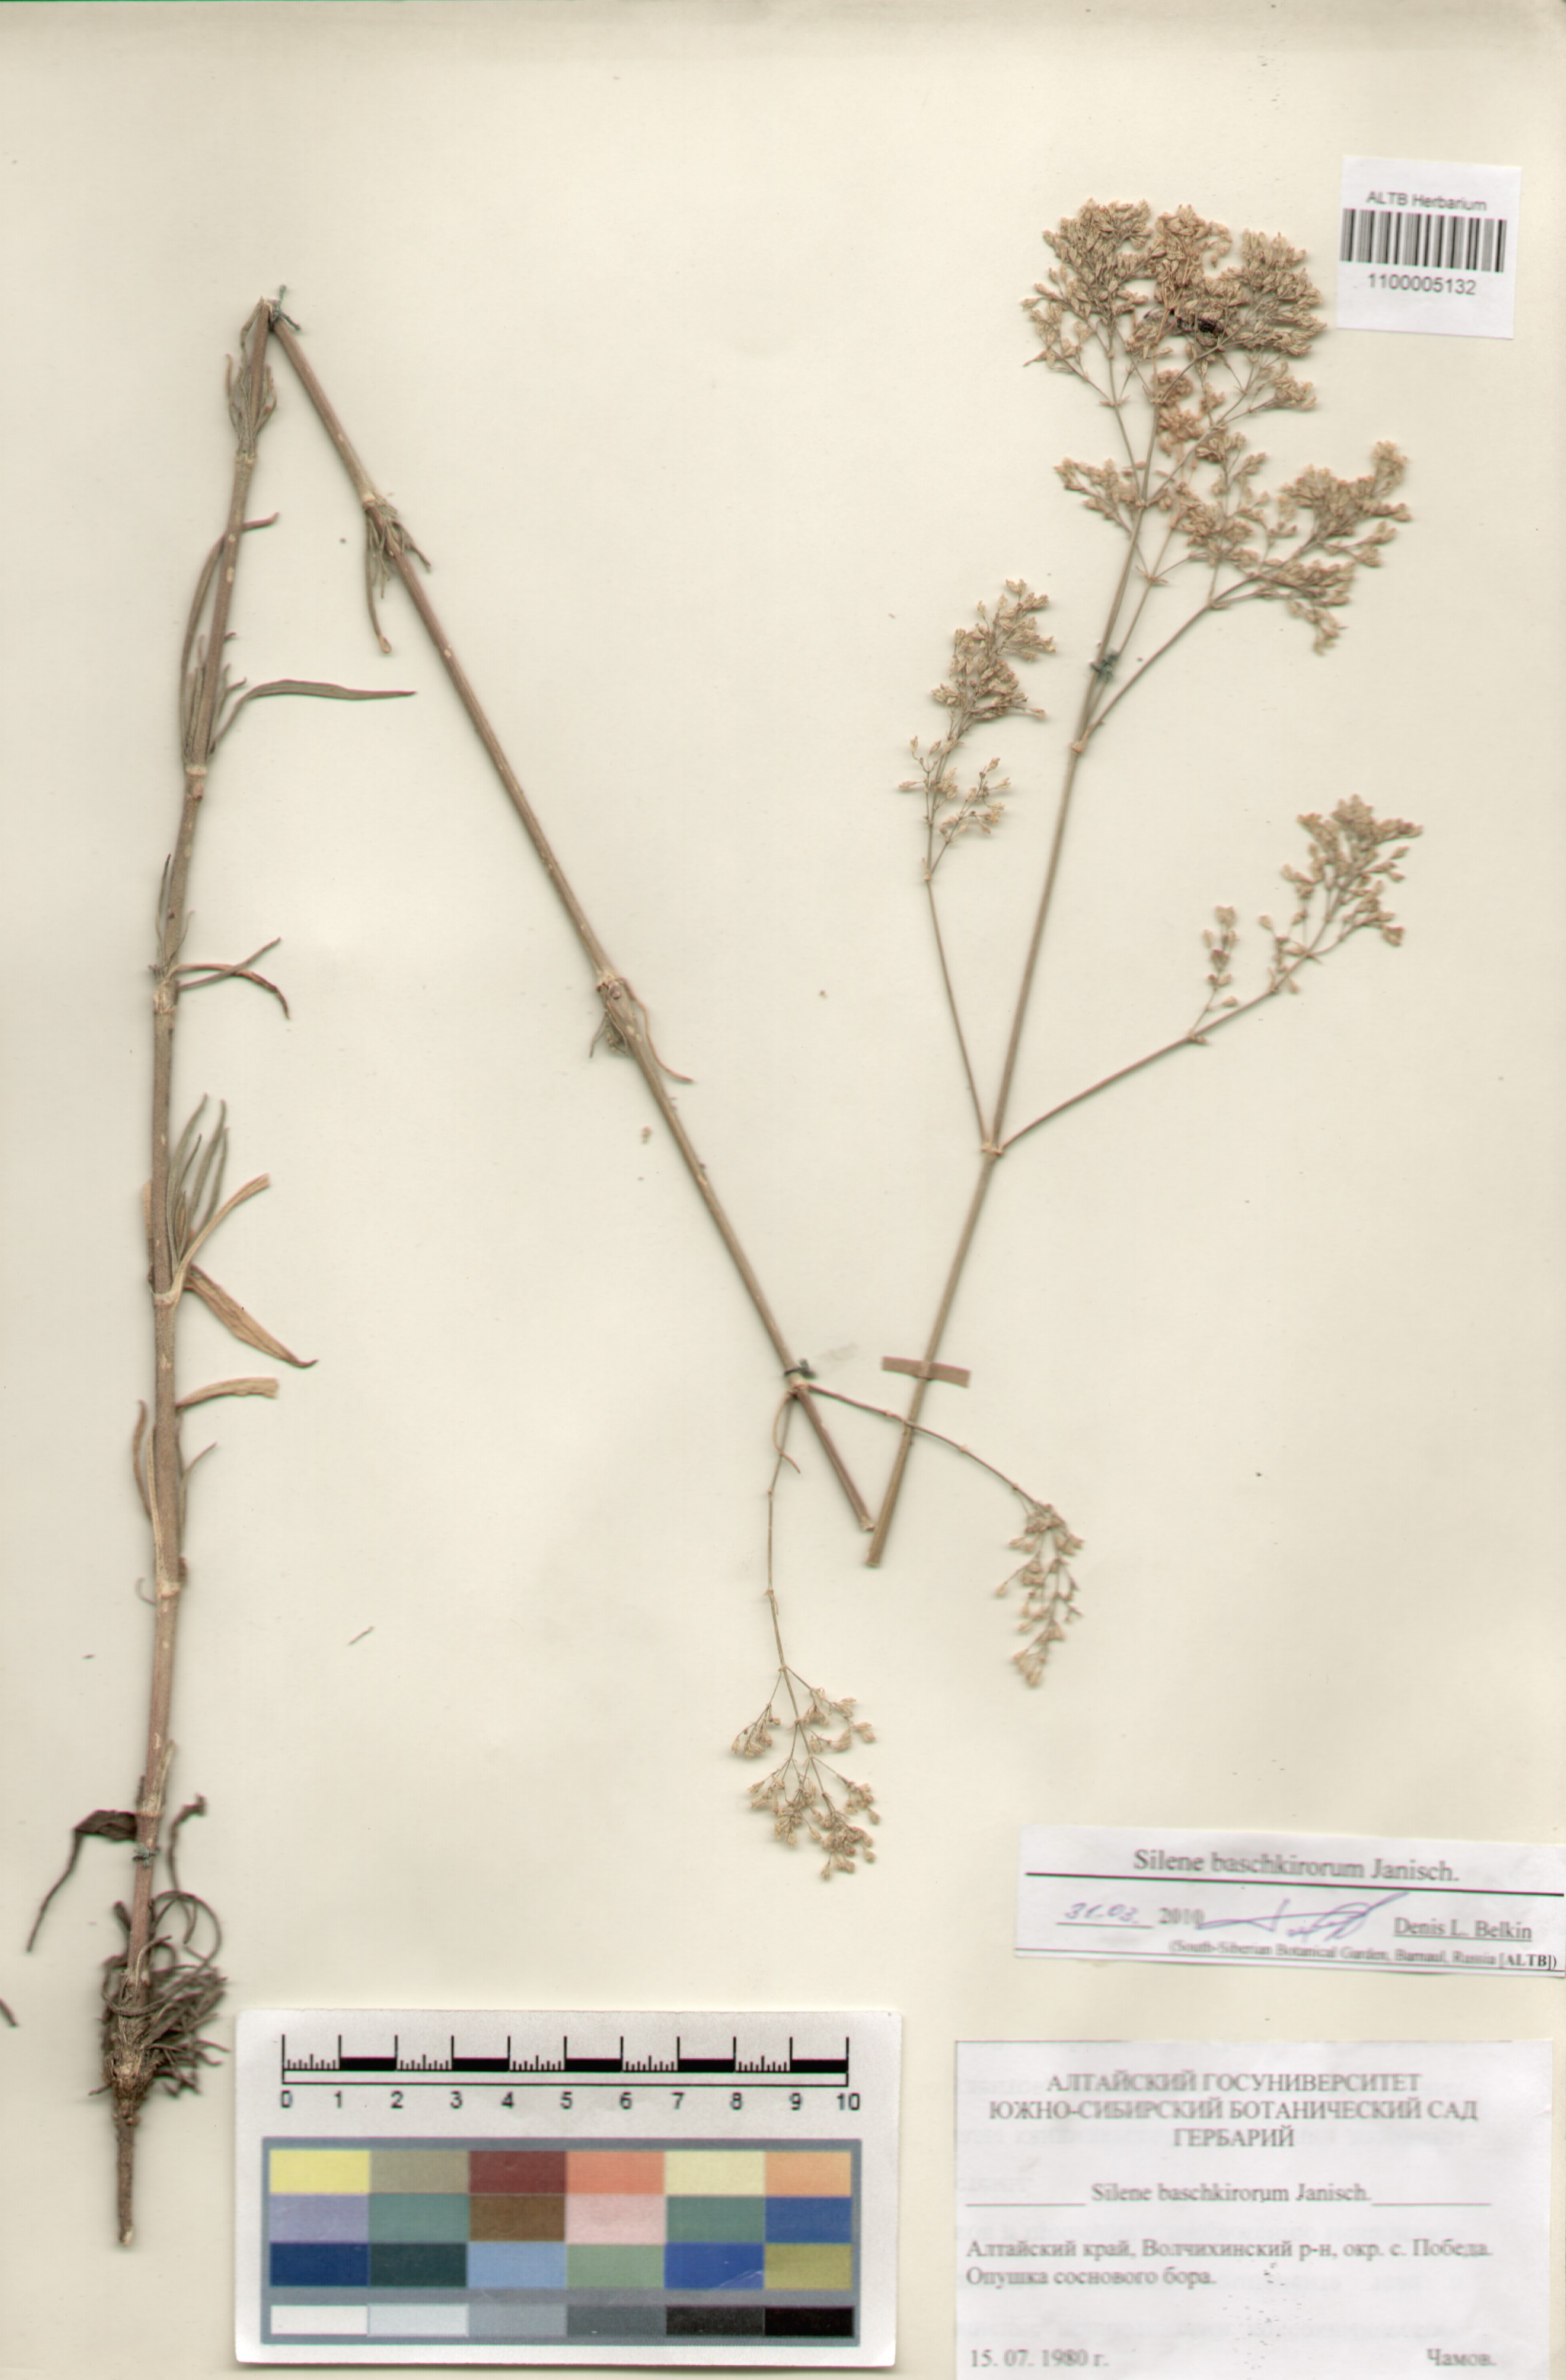 Caryophyllaceae,Silene baschkirorum Janisch.